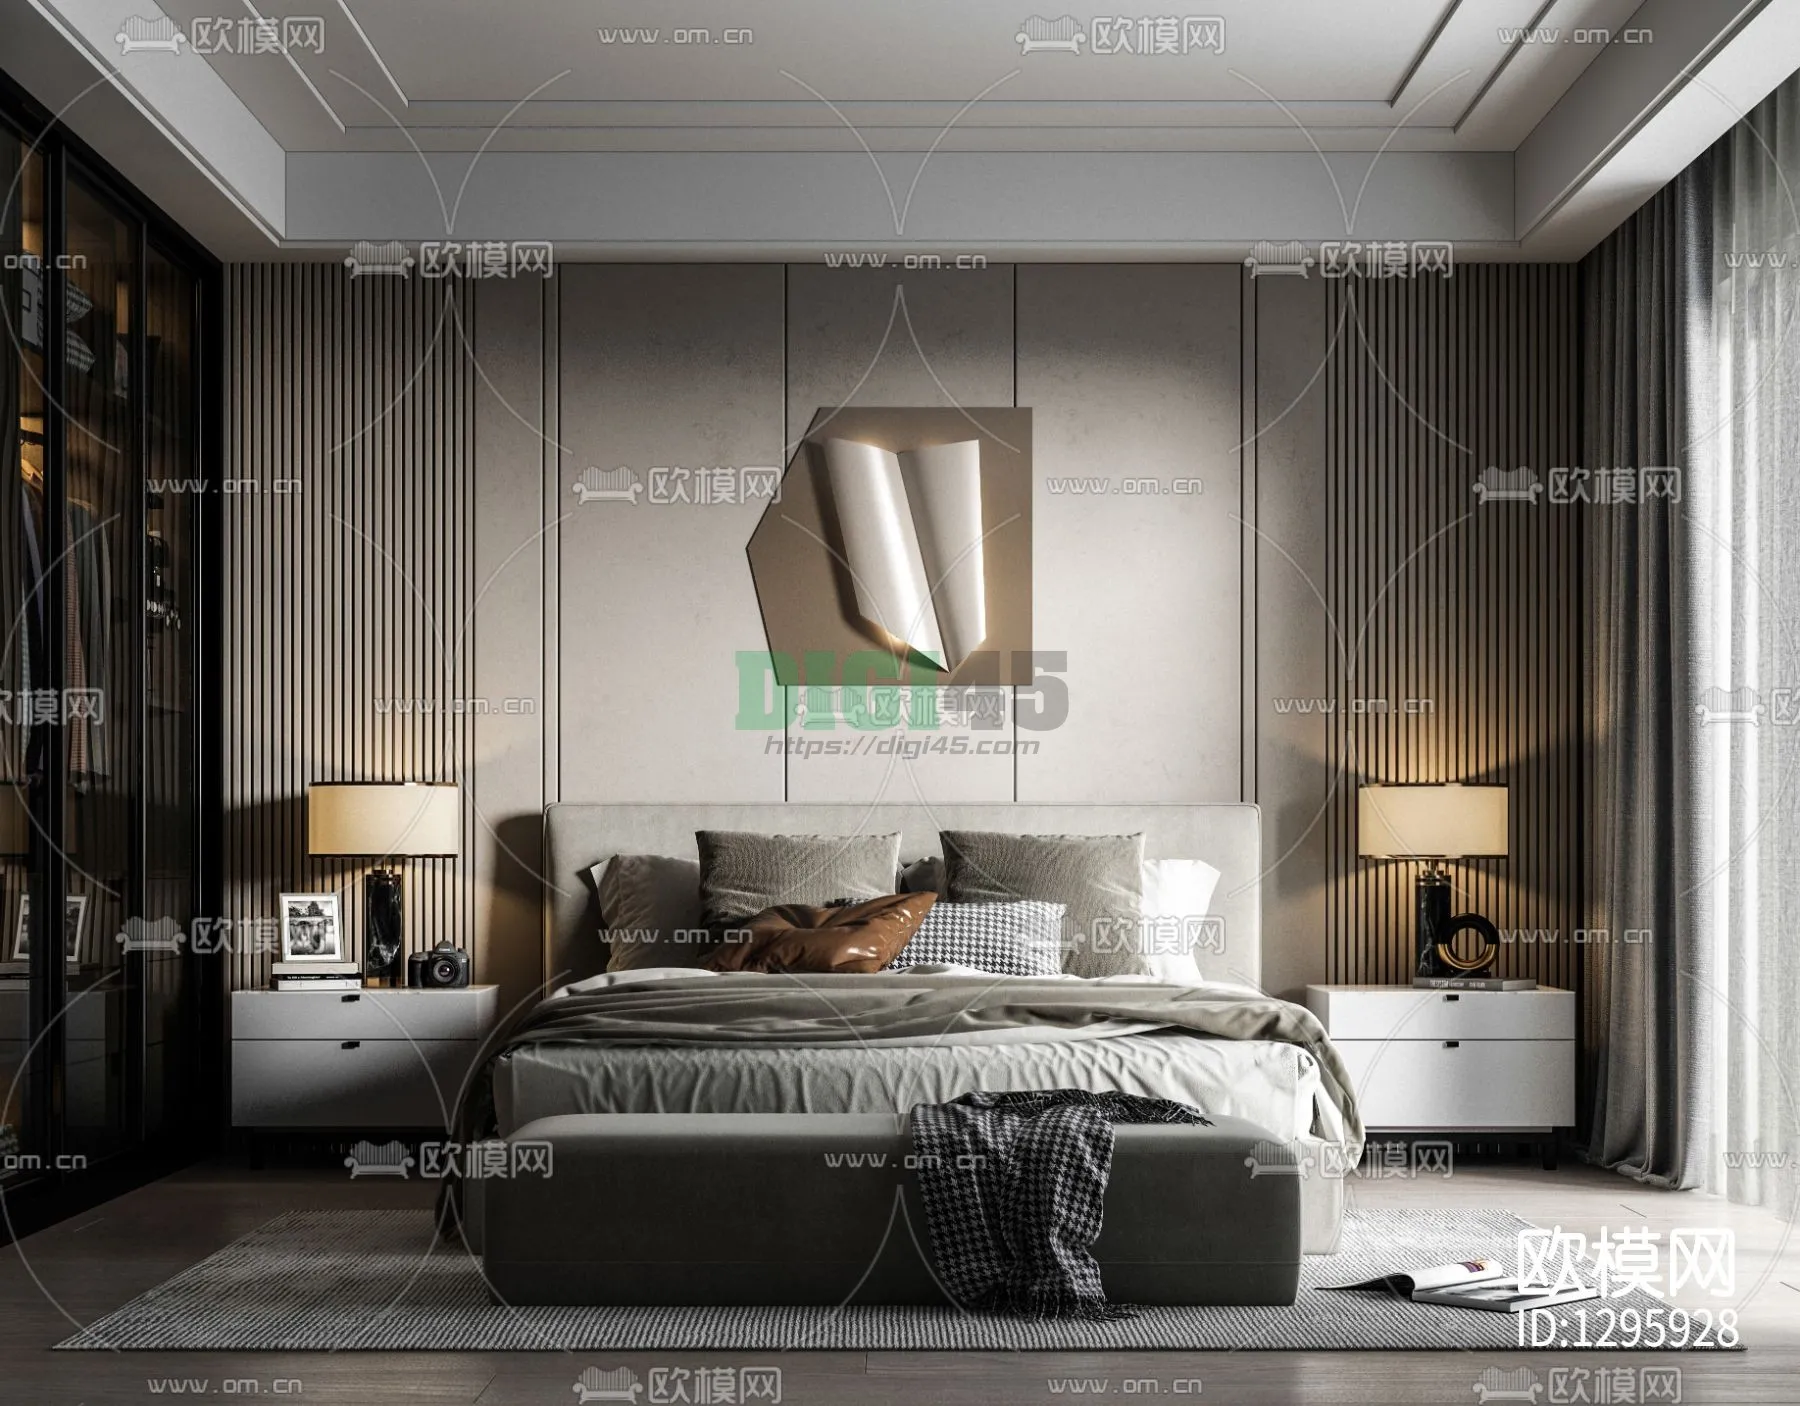 Bedroom 3D Scenes – 1135